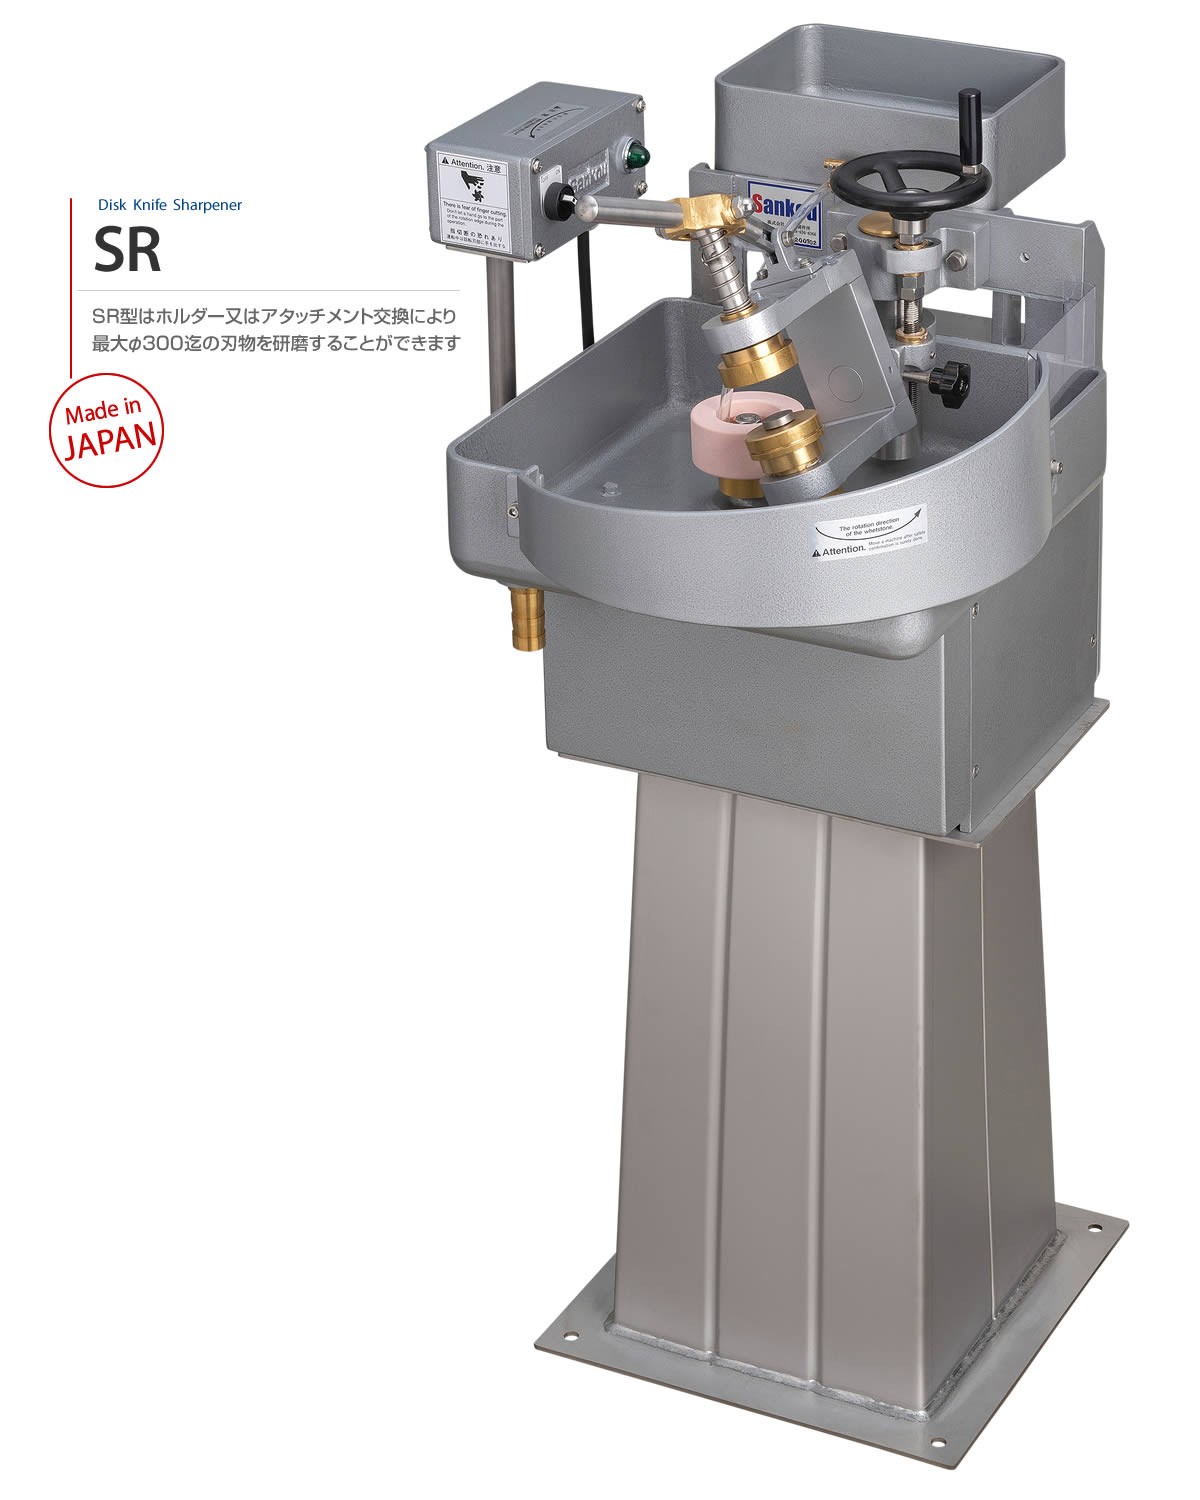 Model SR　SR型はホルダー又はアタッチメント交換により最大φ300迄の刃物を研磨することができます　Made in JAPAN